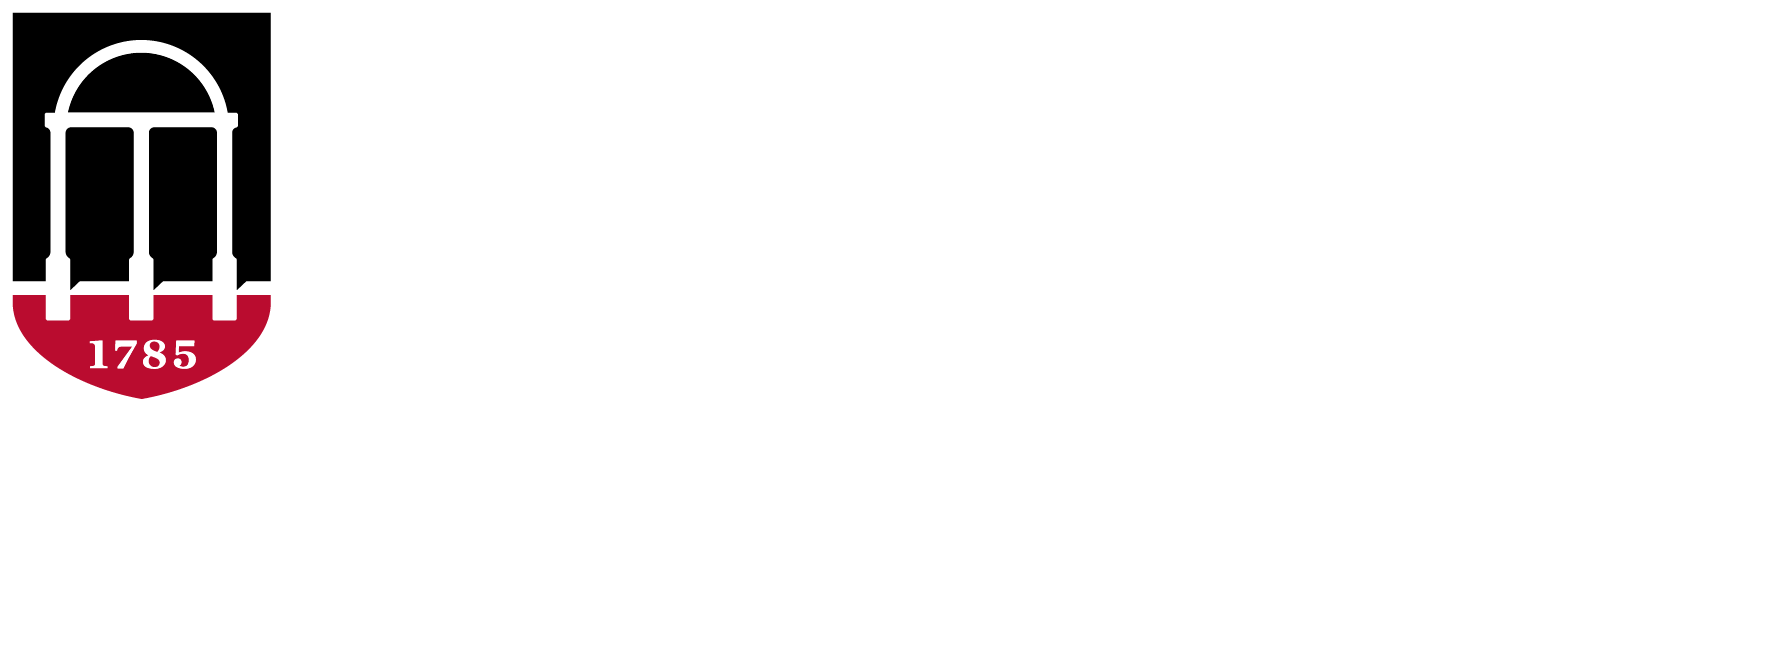 UGA Extension